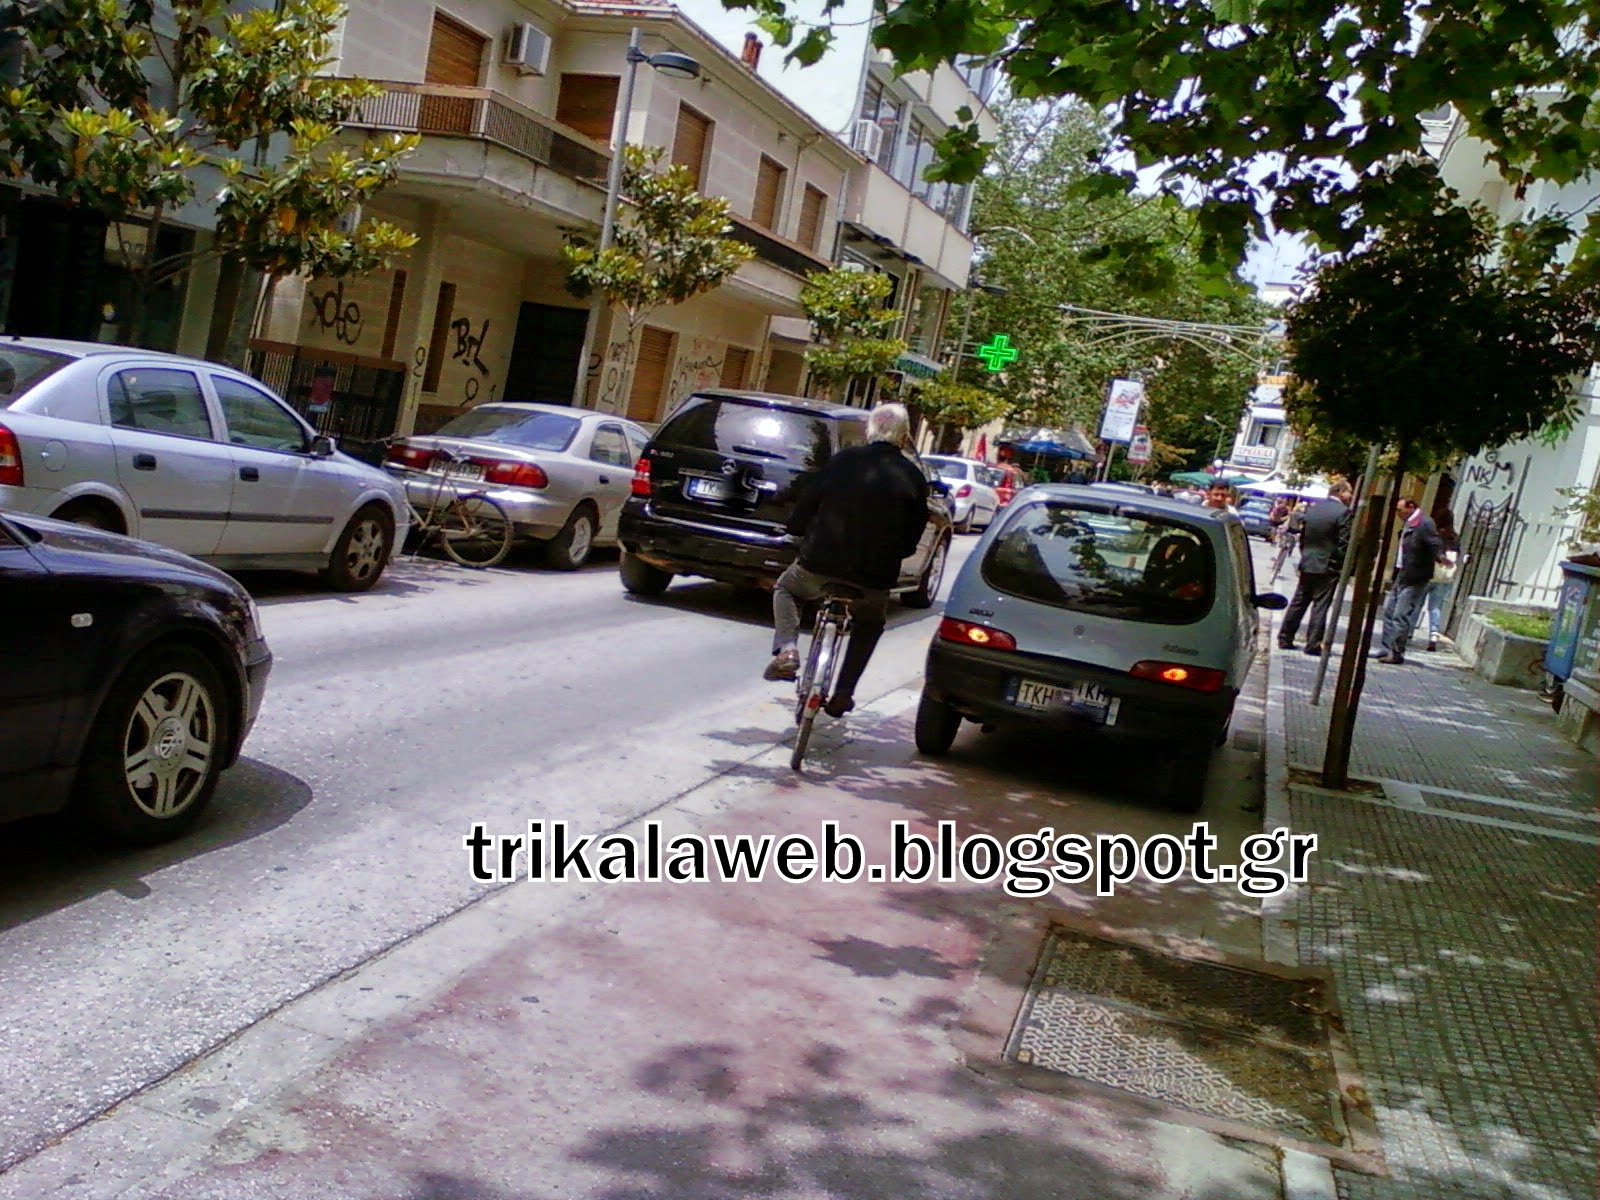 Παρκάρουν όπου βρουν! Δείτε ένα αμάξι στα Τρίκαλα να είναι παρατημένο πάνω σε έναν ποδηλατόδρομο [photo] - Φωτογραφία 2